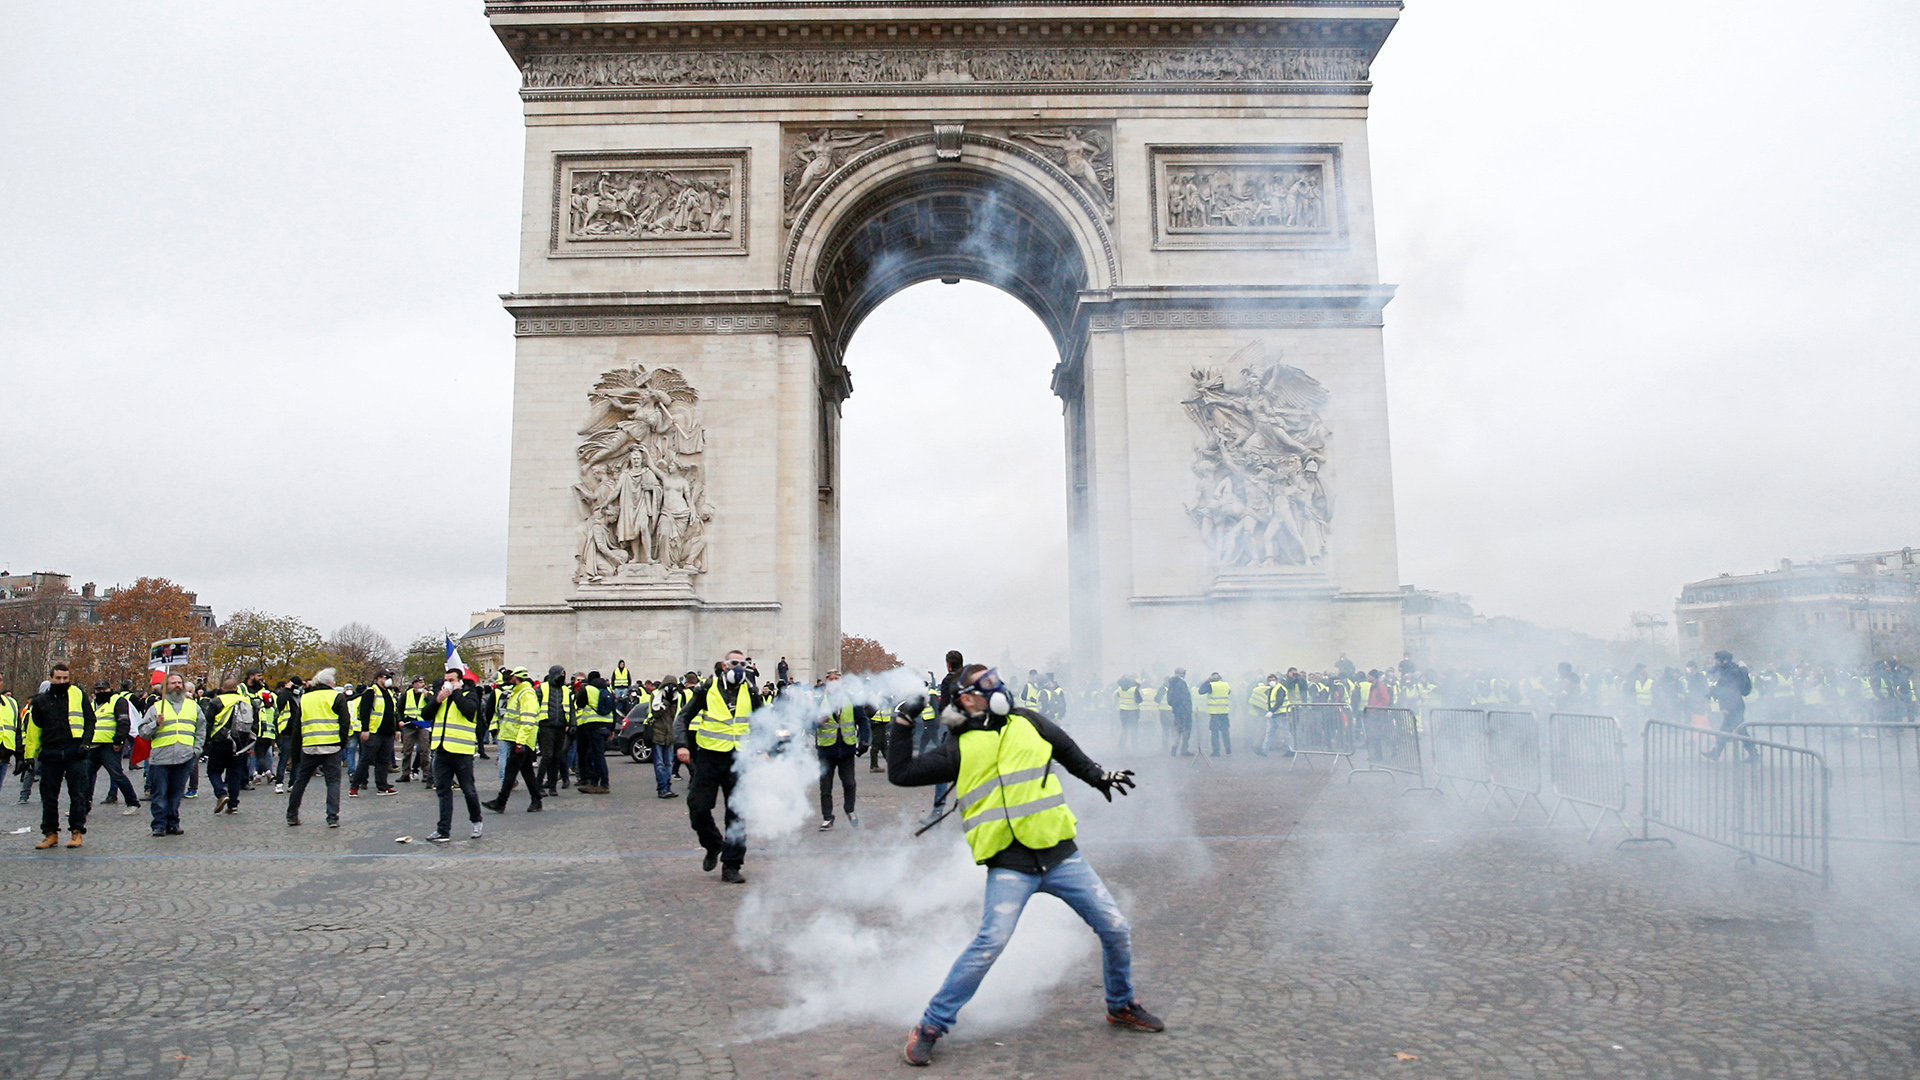 Gelbwesten in Tränengaswolken am Arc de Triomphe | Bildquelle: REUTERS